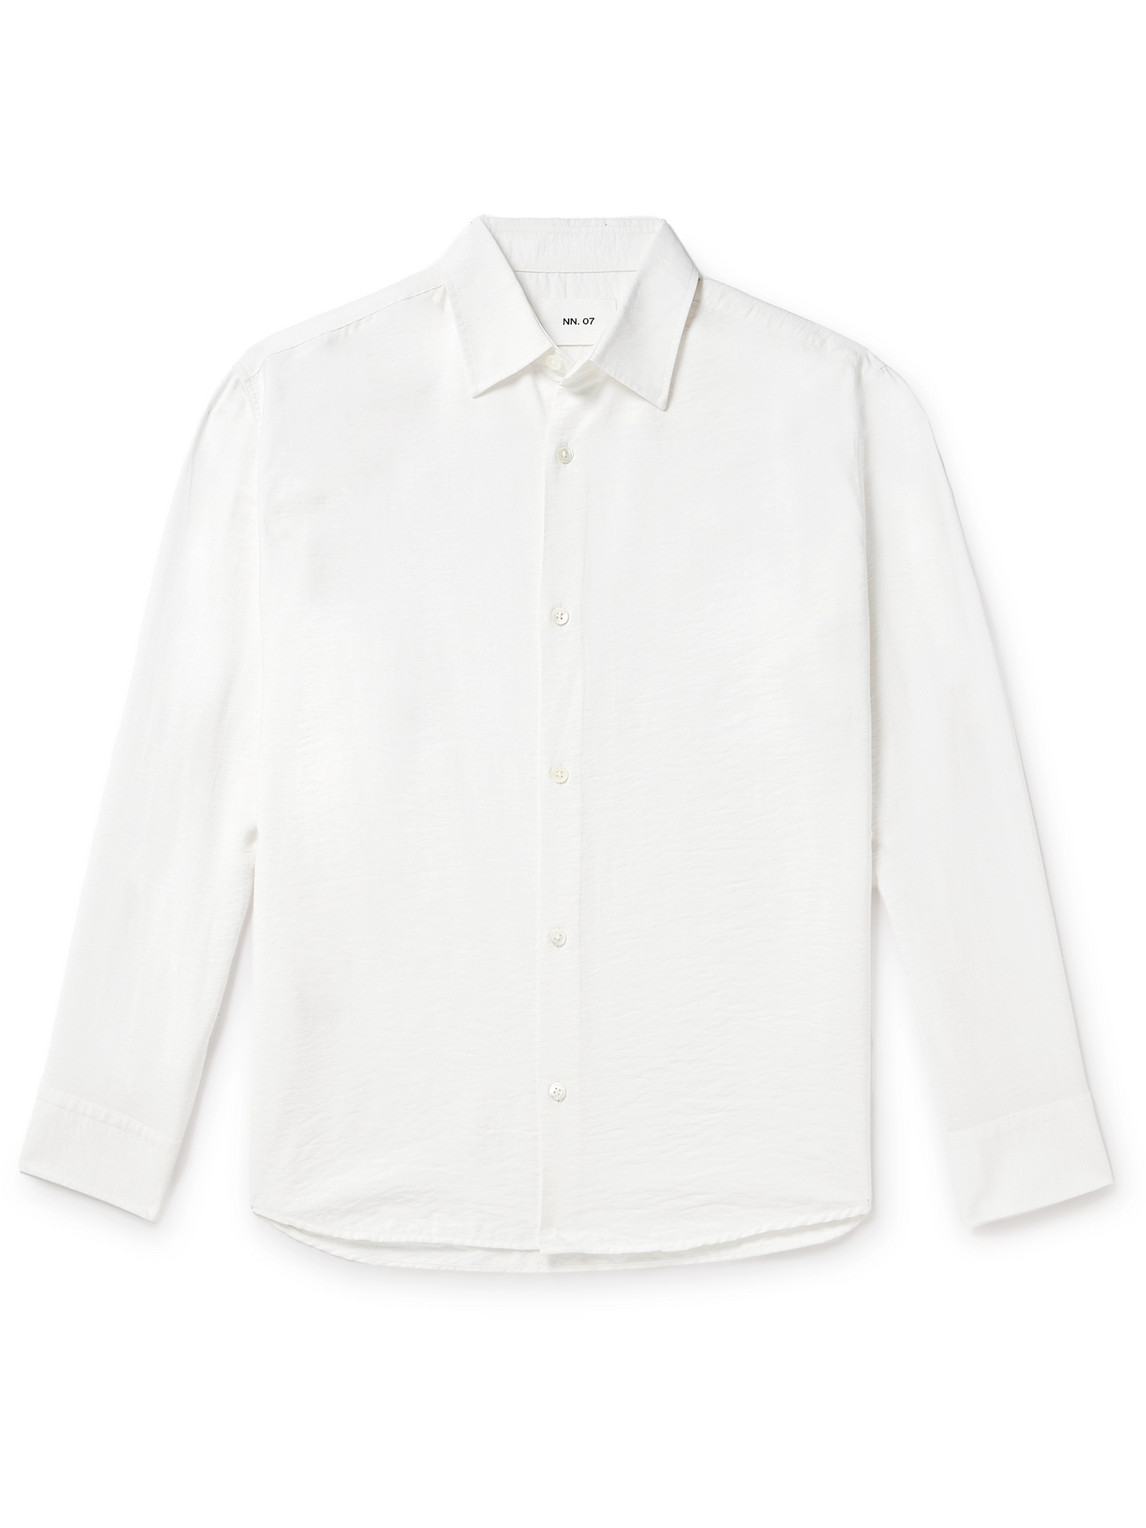 NN07 - Freddy 5971 Crinkled Modal-Blend Shirt - Men - White - L von NN07